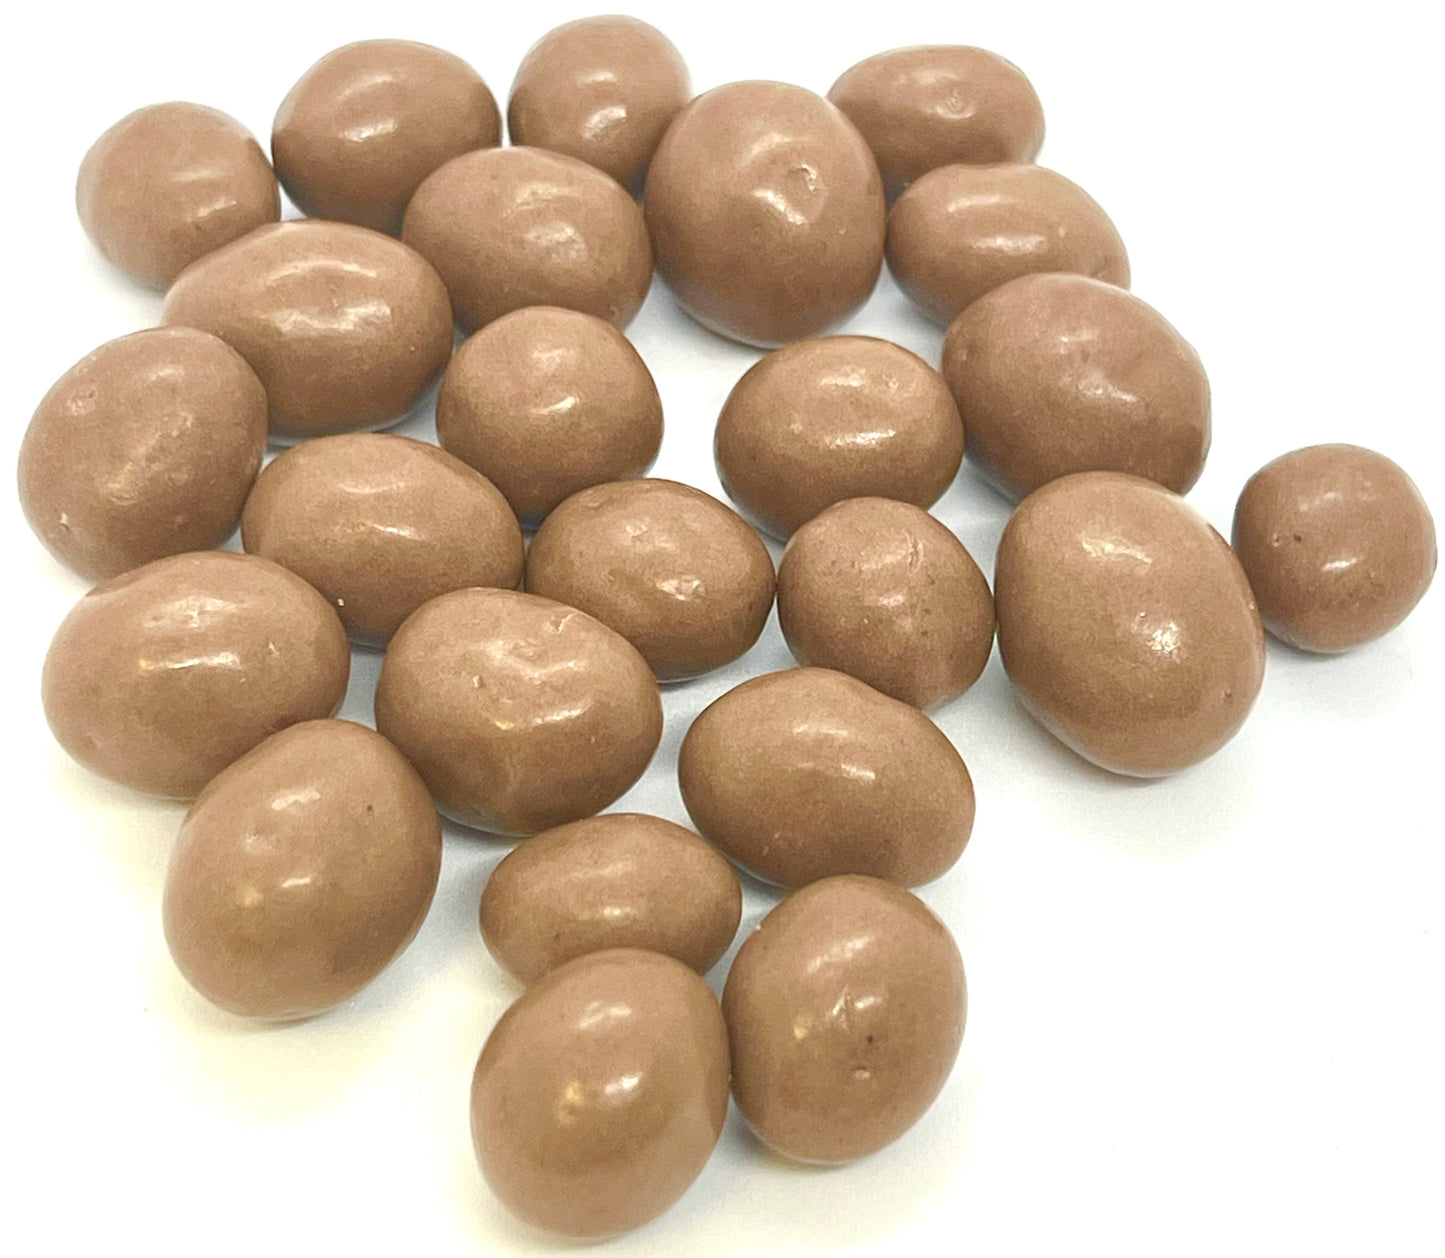 Milk chocolate peanuts